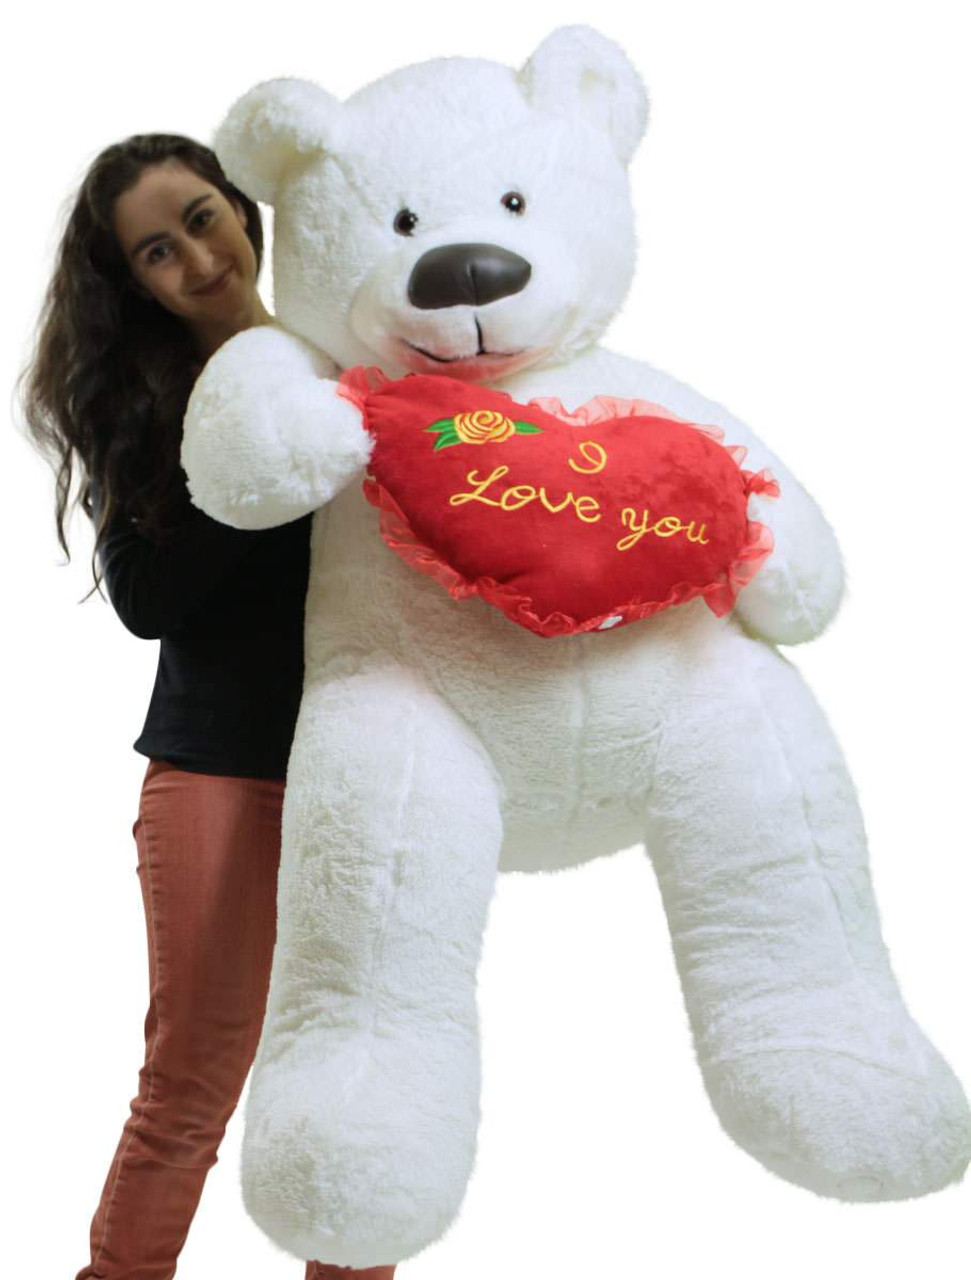 I Love You Giant Teddy Bear 5 Foot Soft Teddybear with Heart Pillow Brand New 